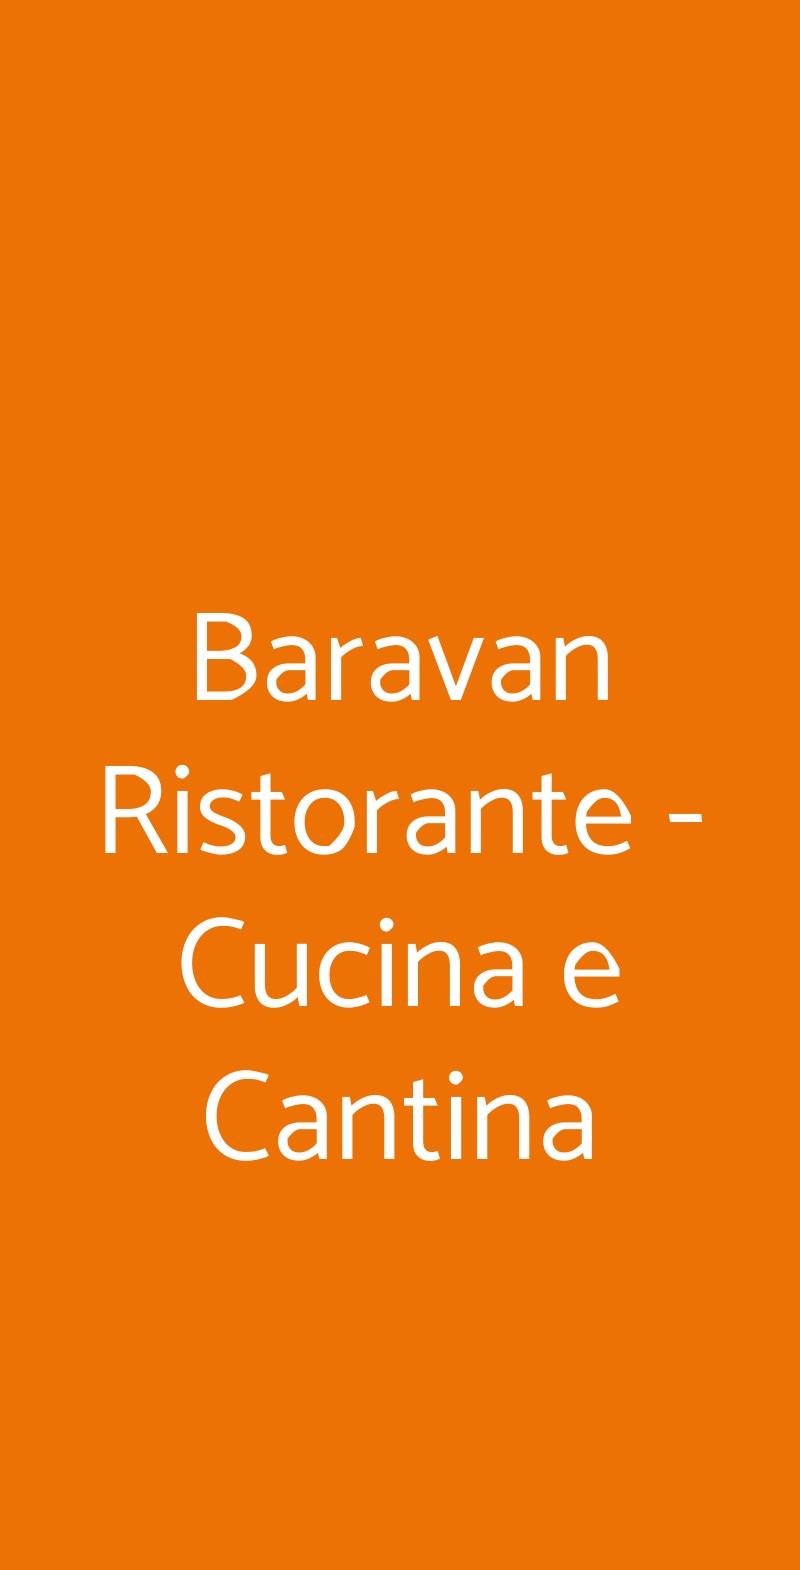 Baravan Ristorante - Cucina e Cantina Torino menù 1 pagina